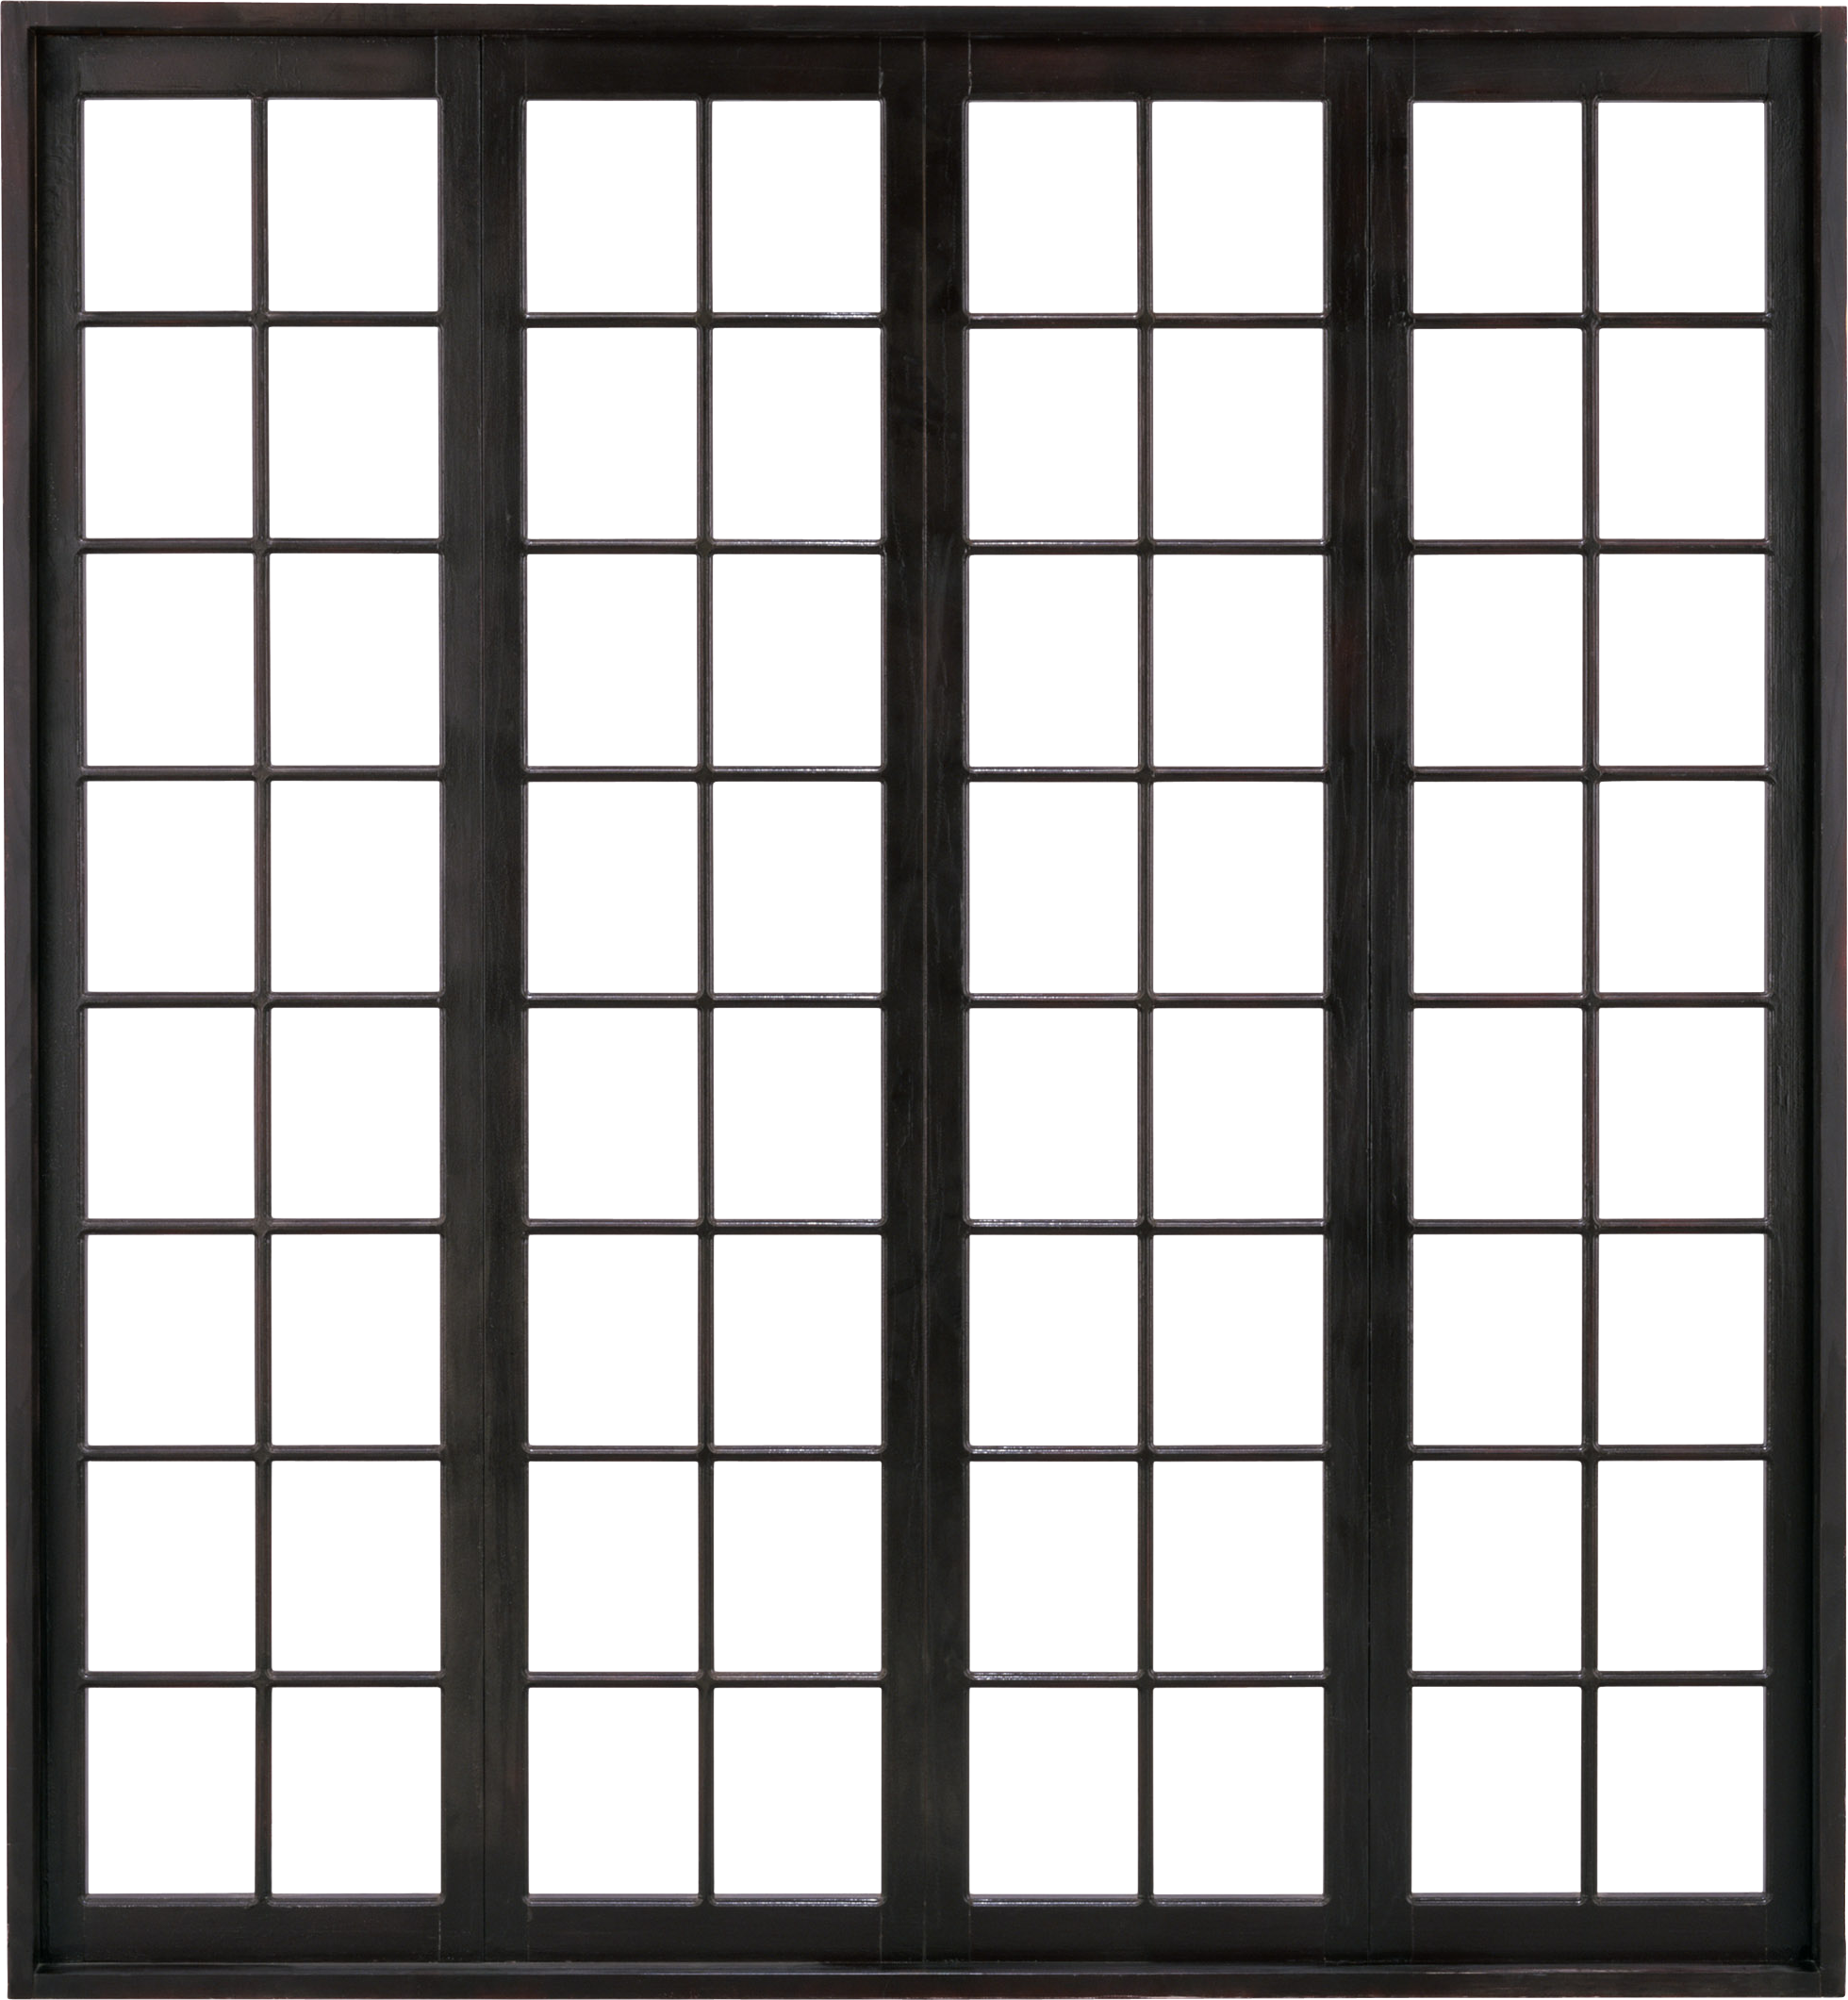 Текстура пластикового окна. Окно в черной раме. Окно на прозрачном фоне. Панорамные окна в клетку. Window elements